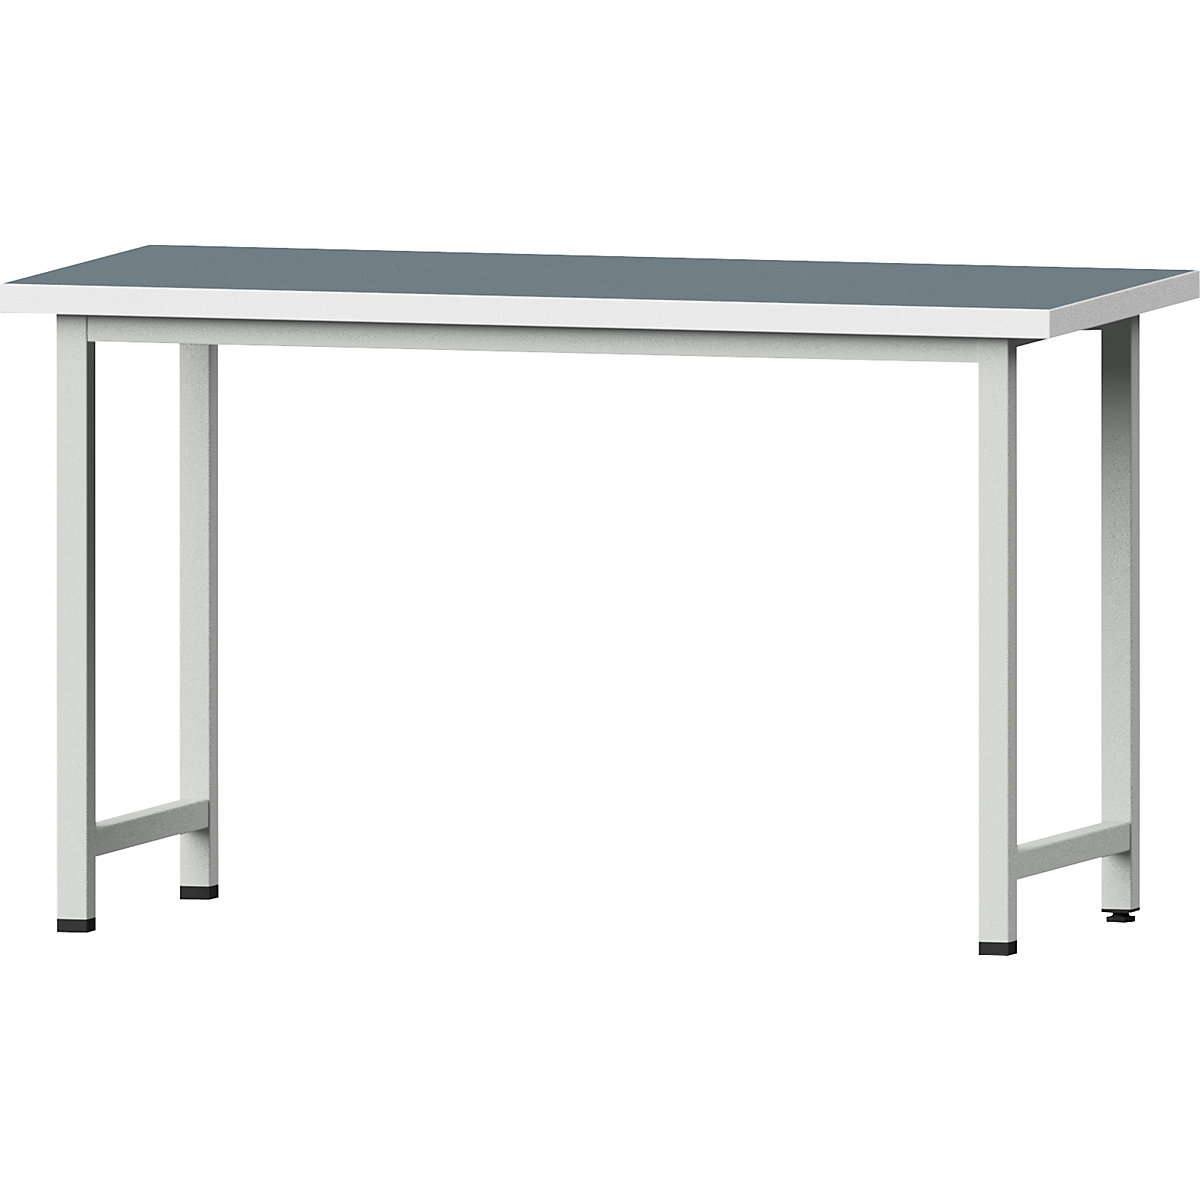 Dielenský stôl, stojanové vyhotovenie – ANKE, základný model, š x h 1500 x 700 mm, univerzálna doska, výška 890 mm-7